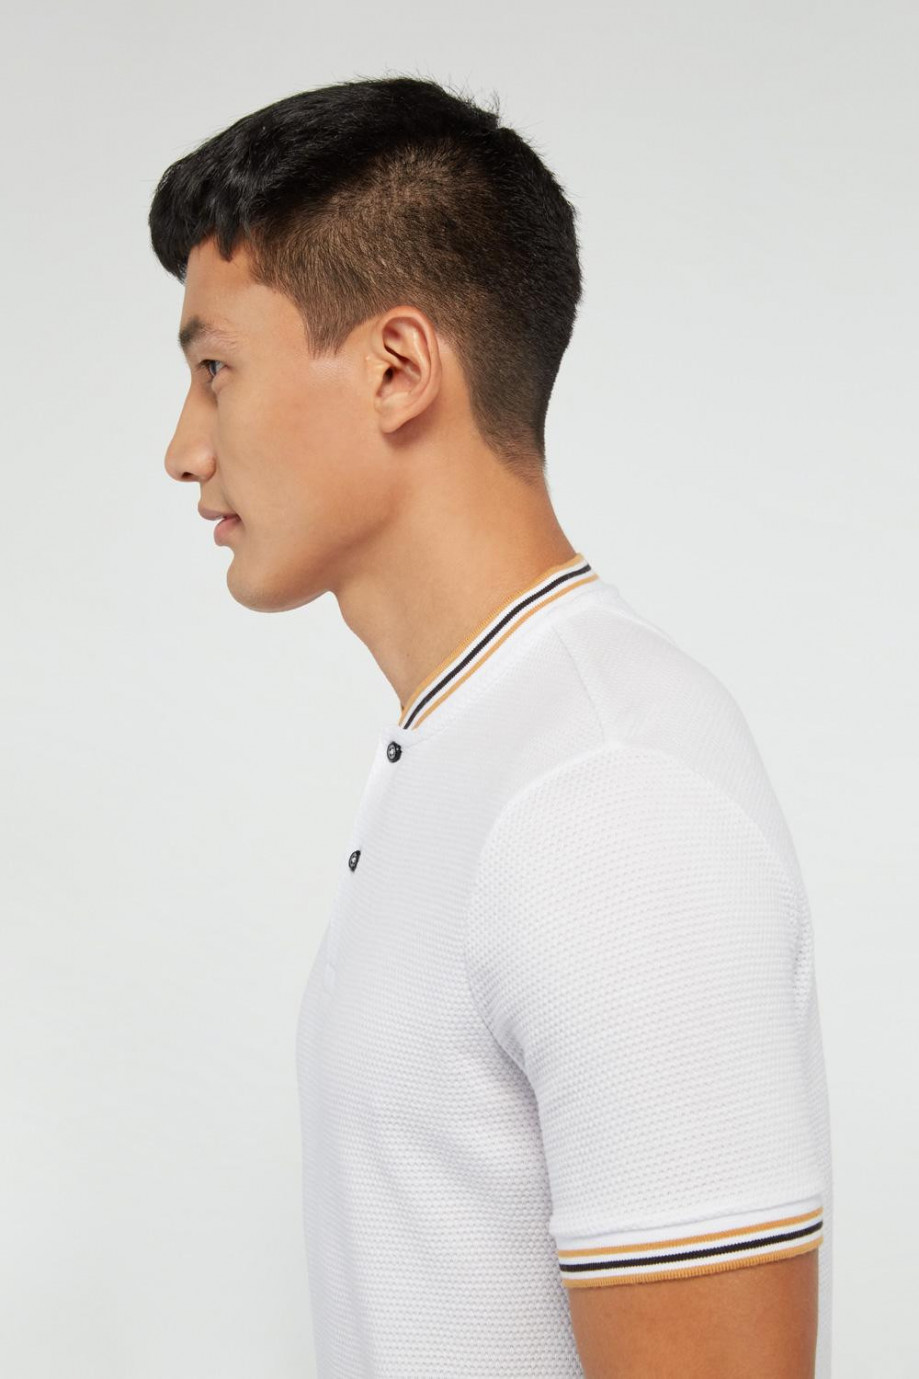 Camiseta polo blanca con cuello y puños tejidos con rayas